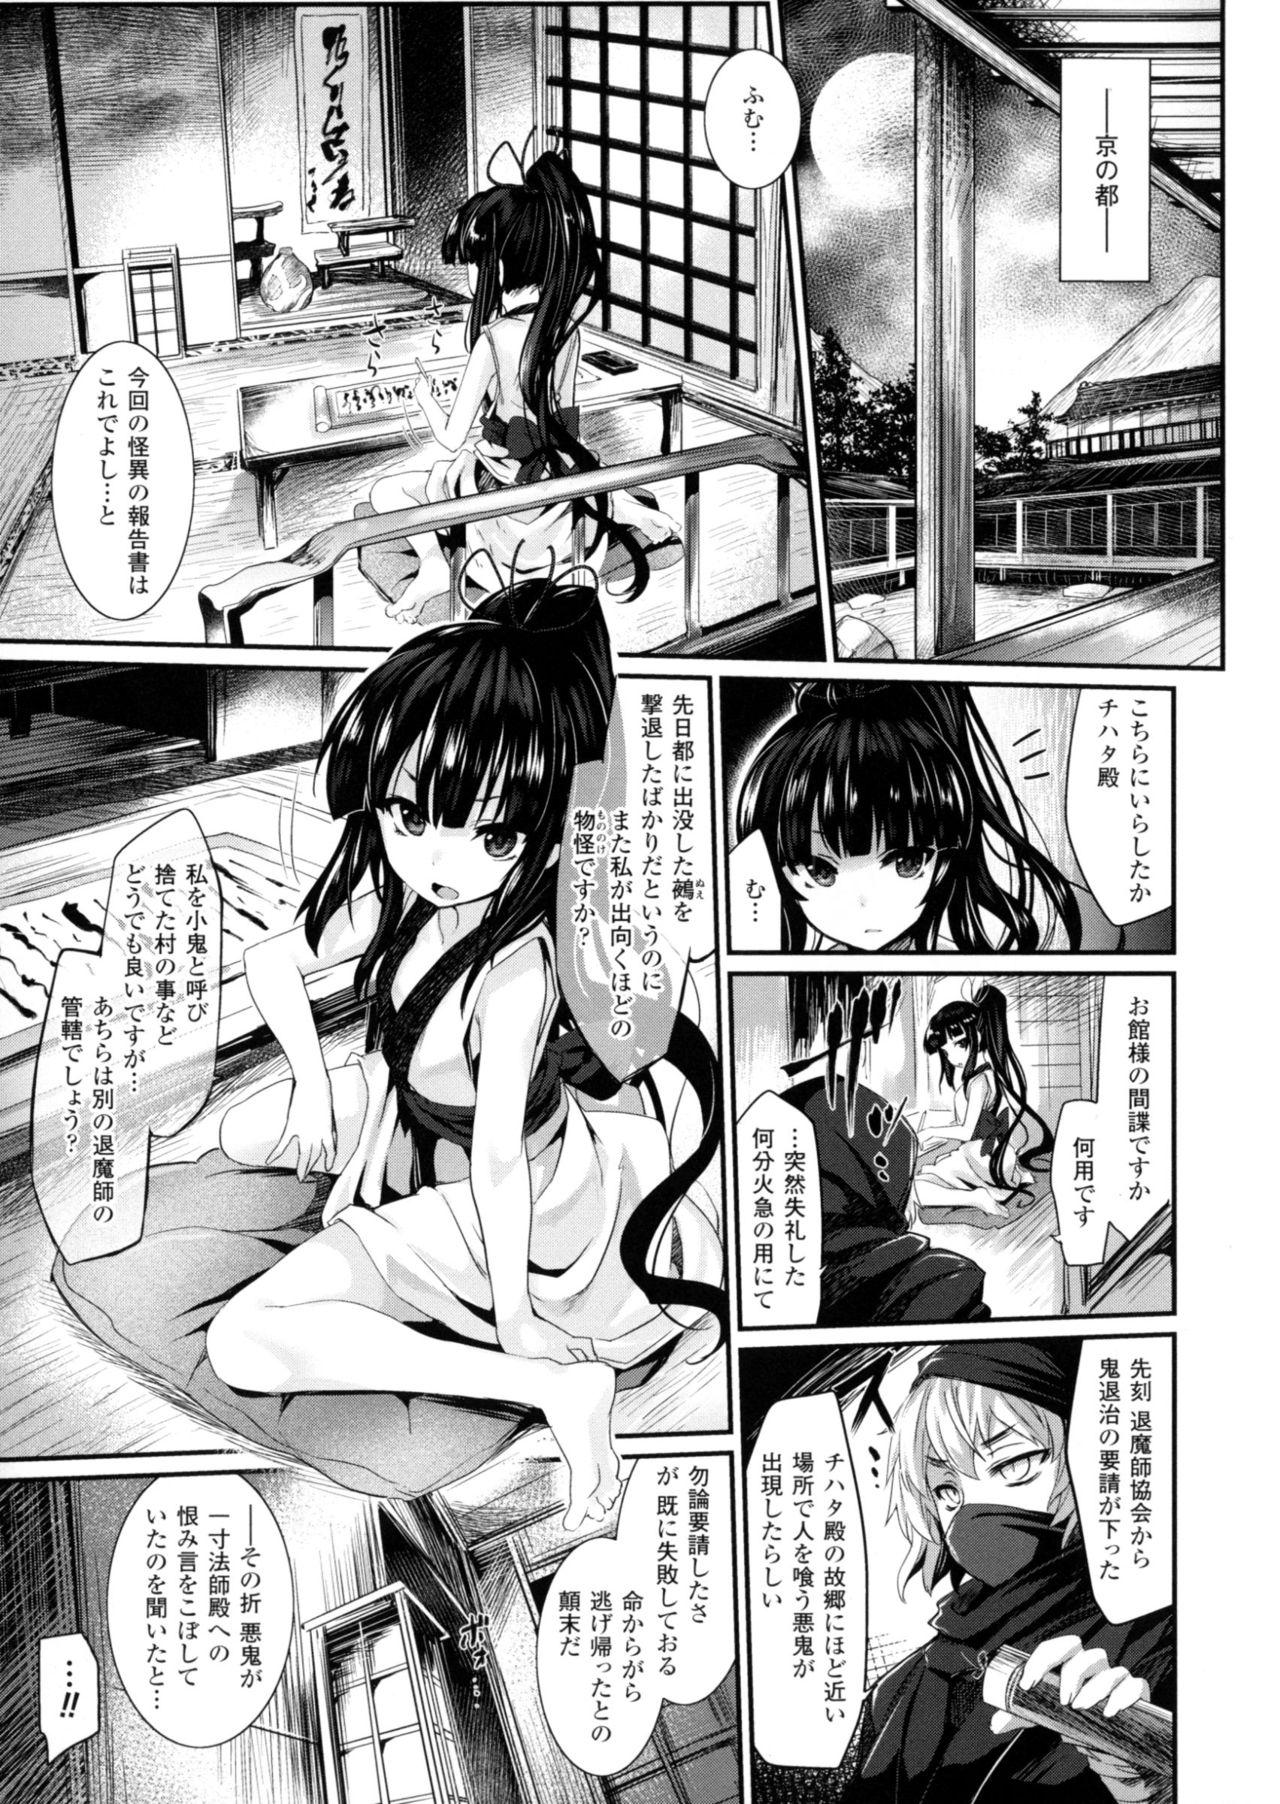 2D Comic Magazine Marunomi Iki Jigoku Monster ni Hoshokusareta Heroine-tachi 2 70